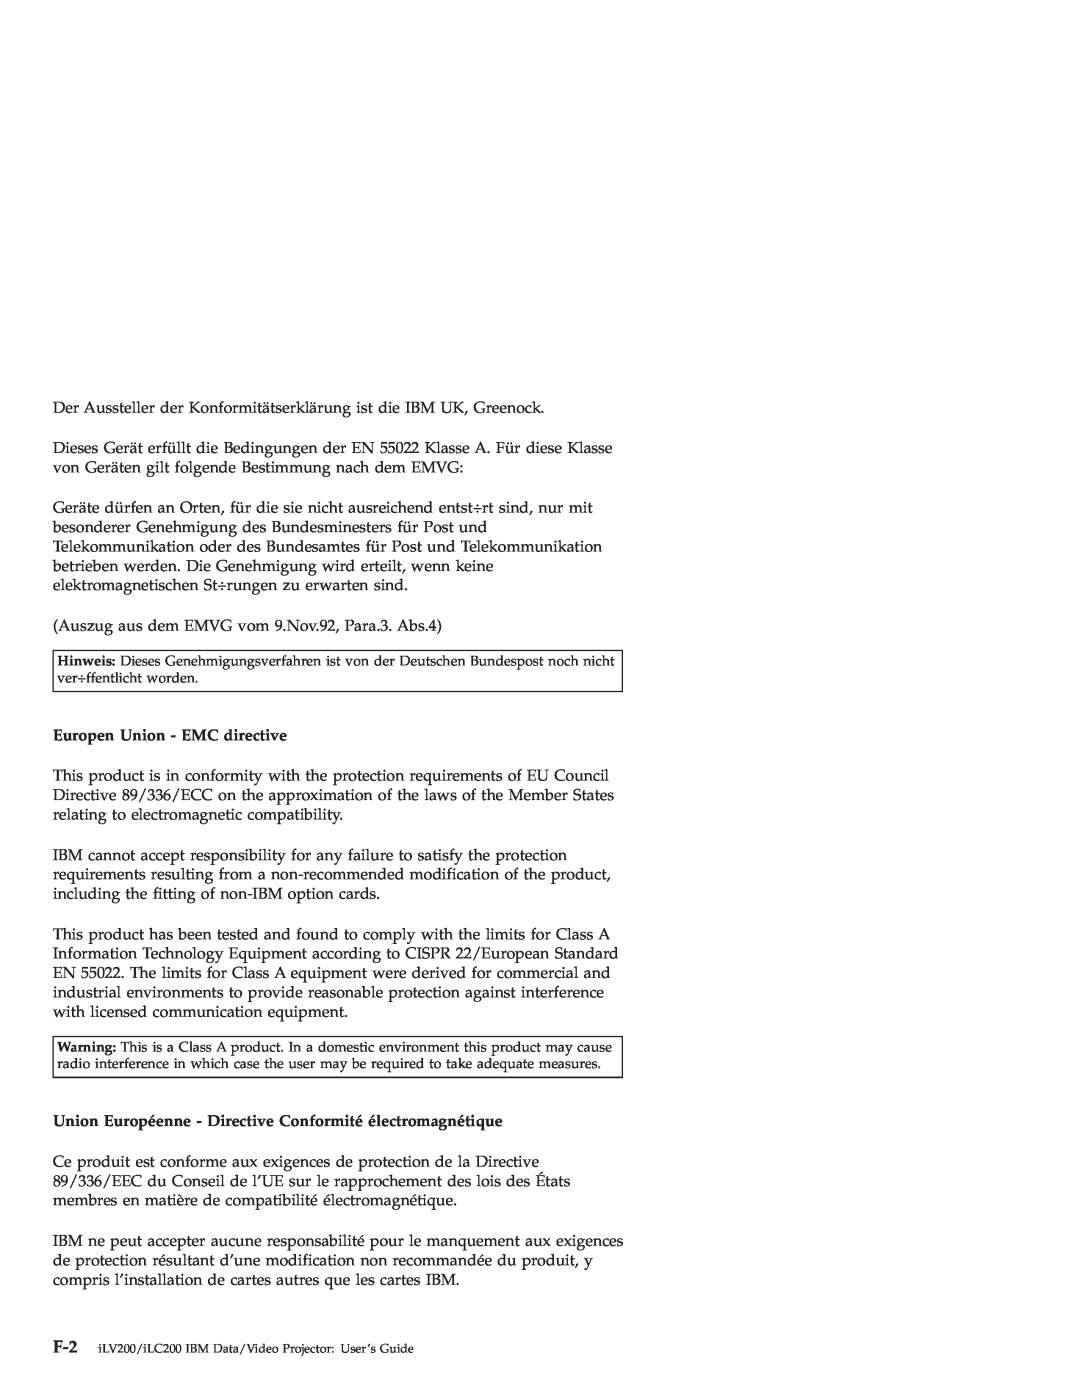 IBM ILV200, ILC200 manual Europen Union - EMC directive, Union Européenne - Directive Conformité électromagnétique 